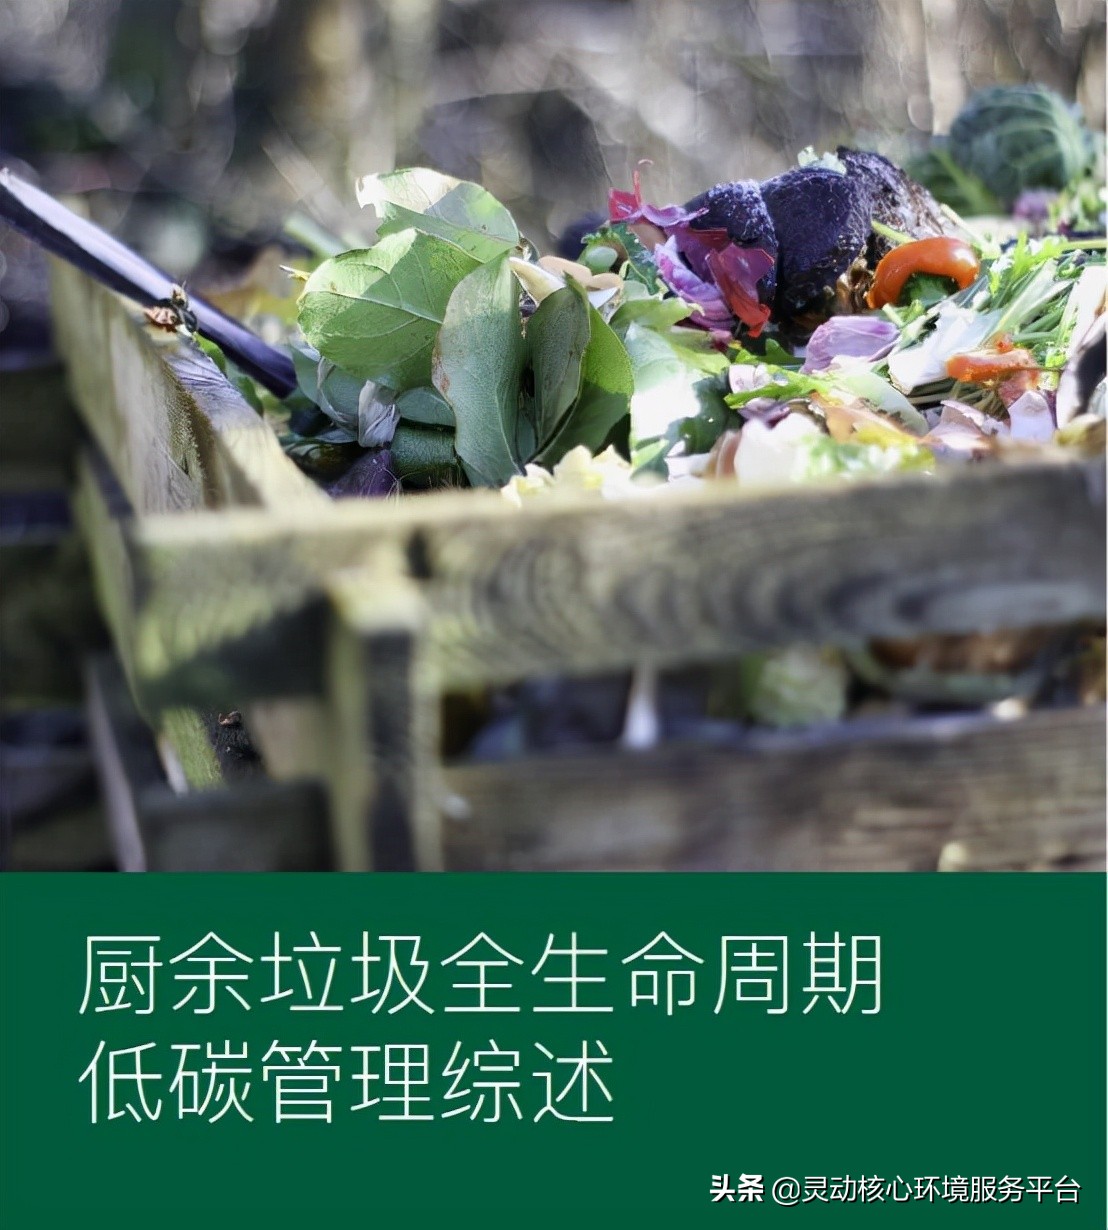 绿色和平：食物浪费与厨余垃圾的温室气体是城市碳达峰的阻力